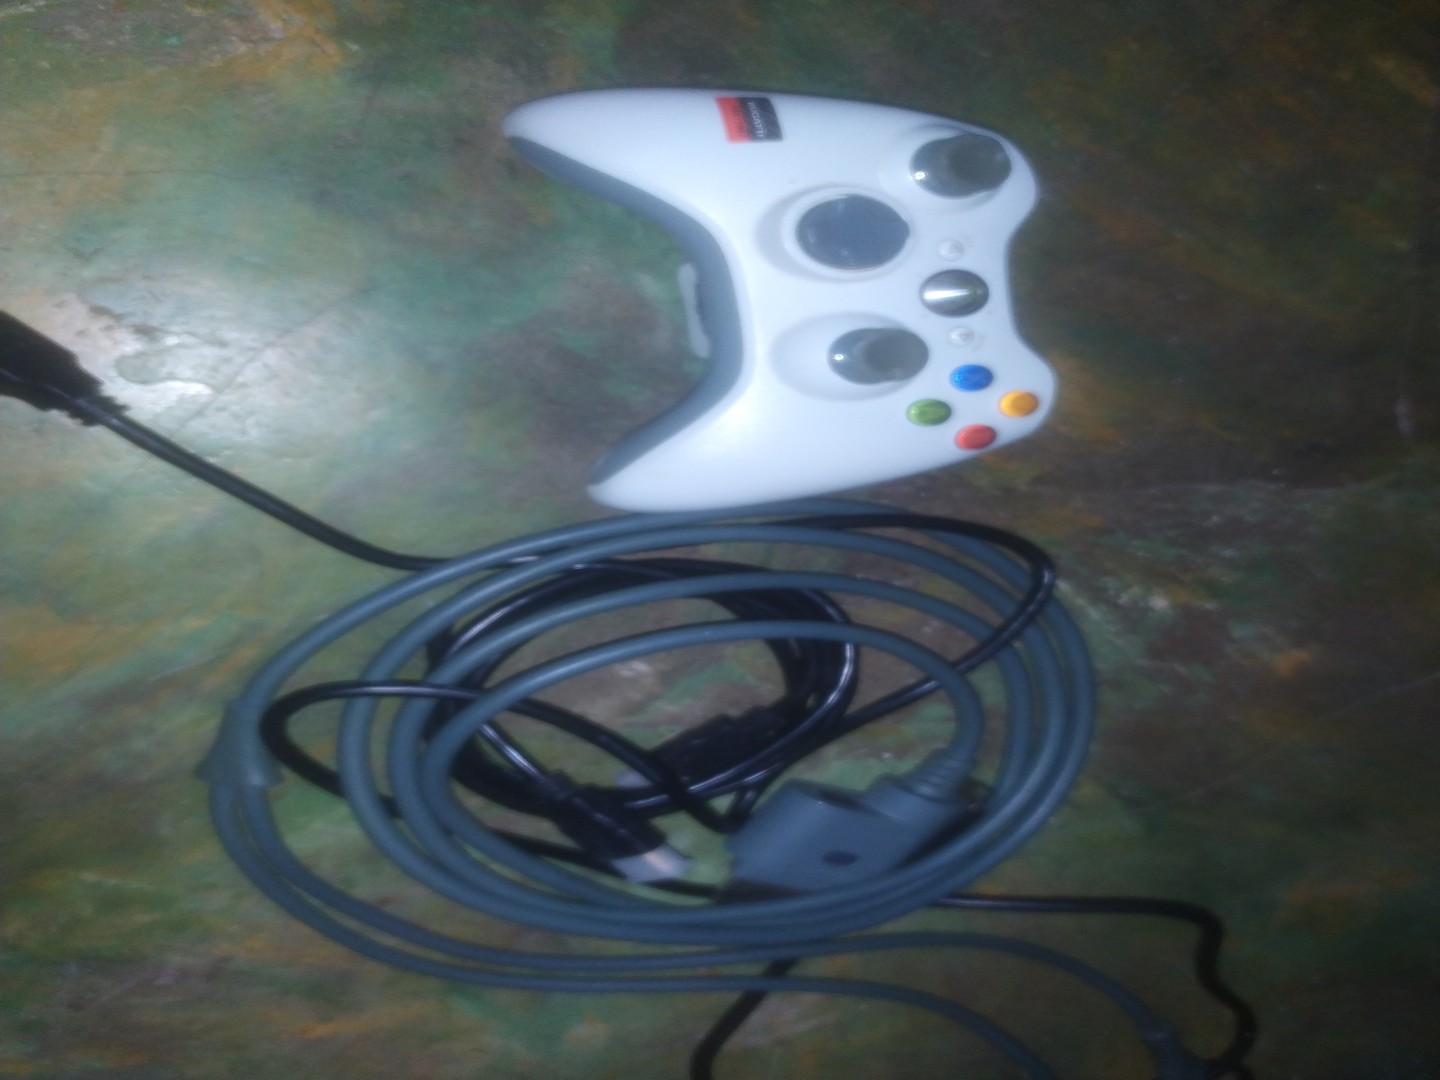 consolas y videojuegos - Xbox 360 con tres juegos, un control, un monitor con su bocina